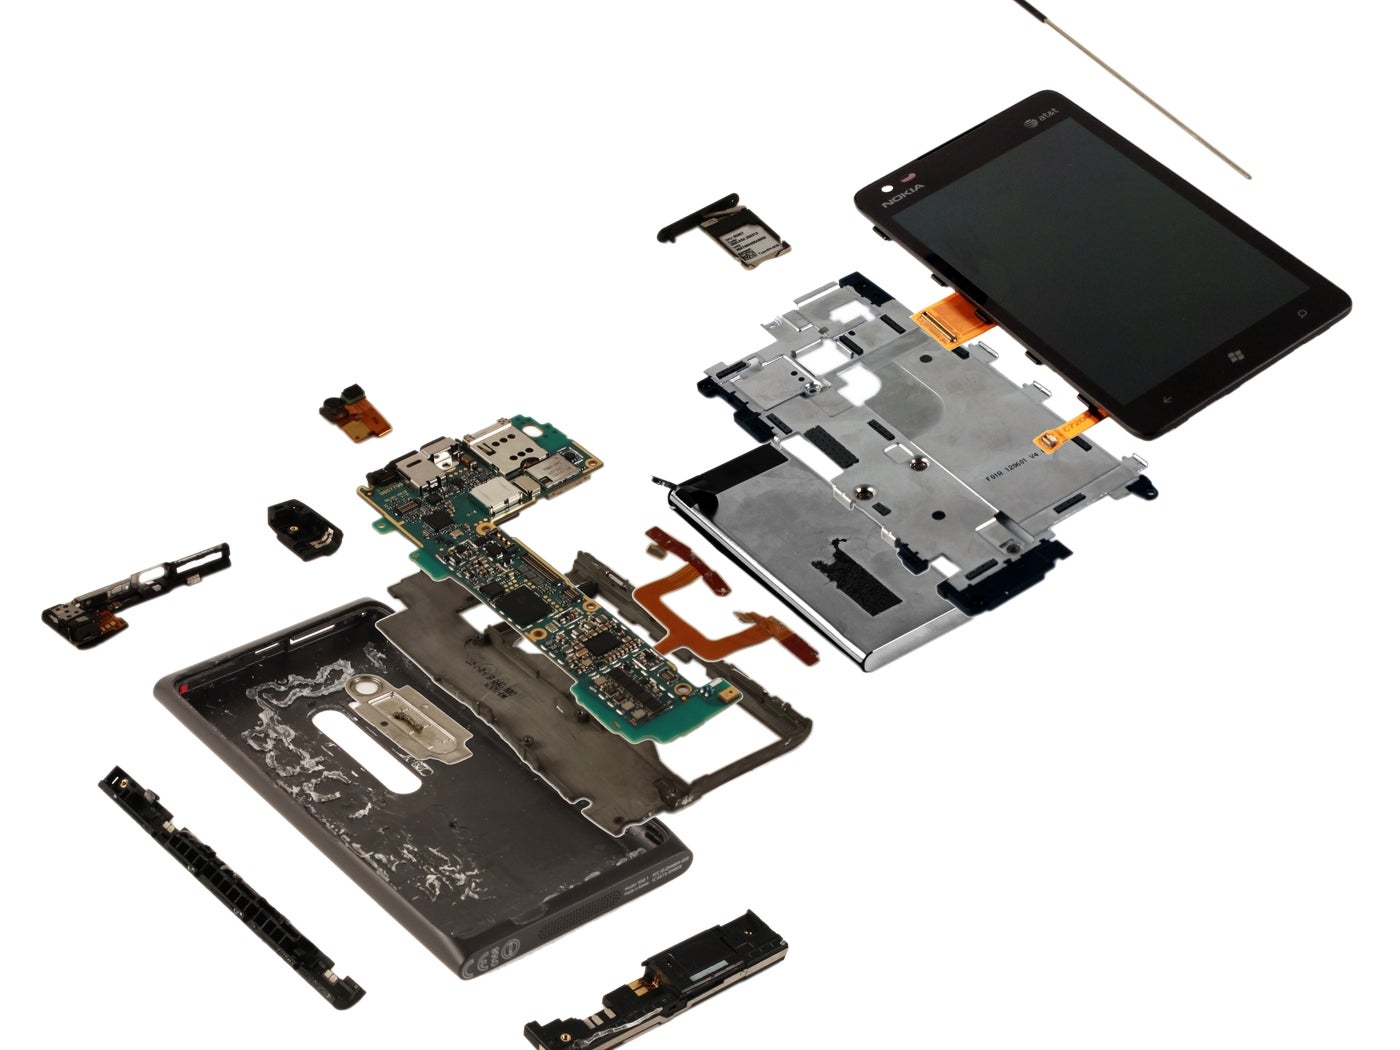 Nokia Lumia 900 teardown - Nokia Lumia 900 teardown exposes $209 worth of parts